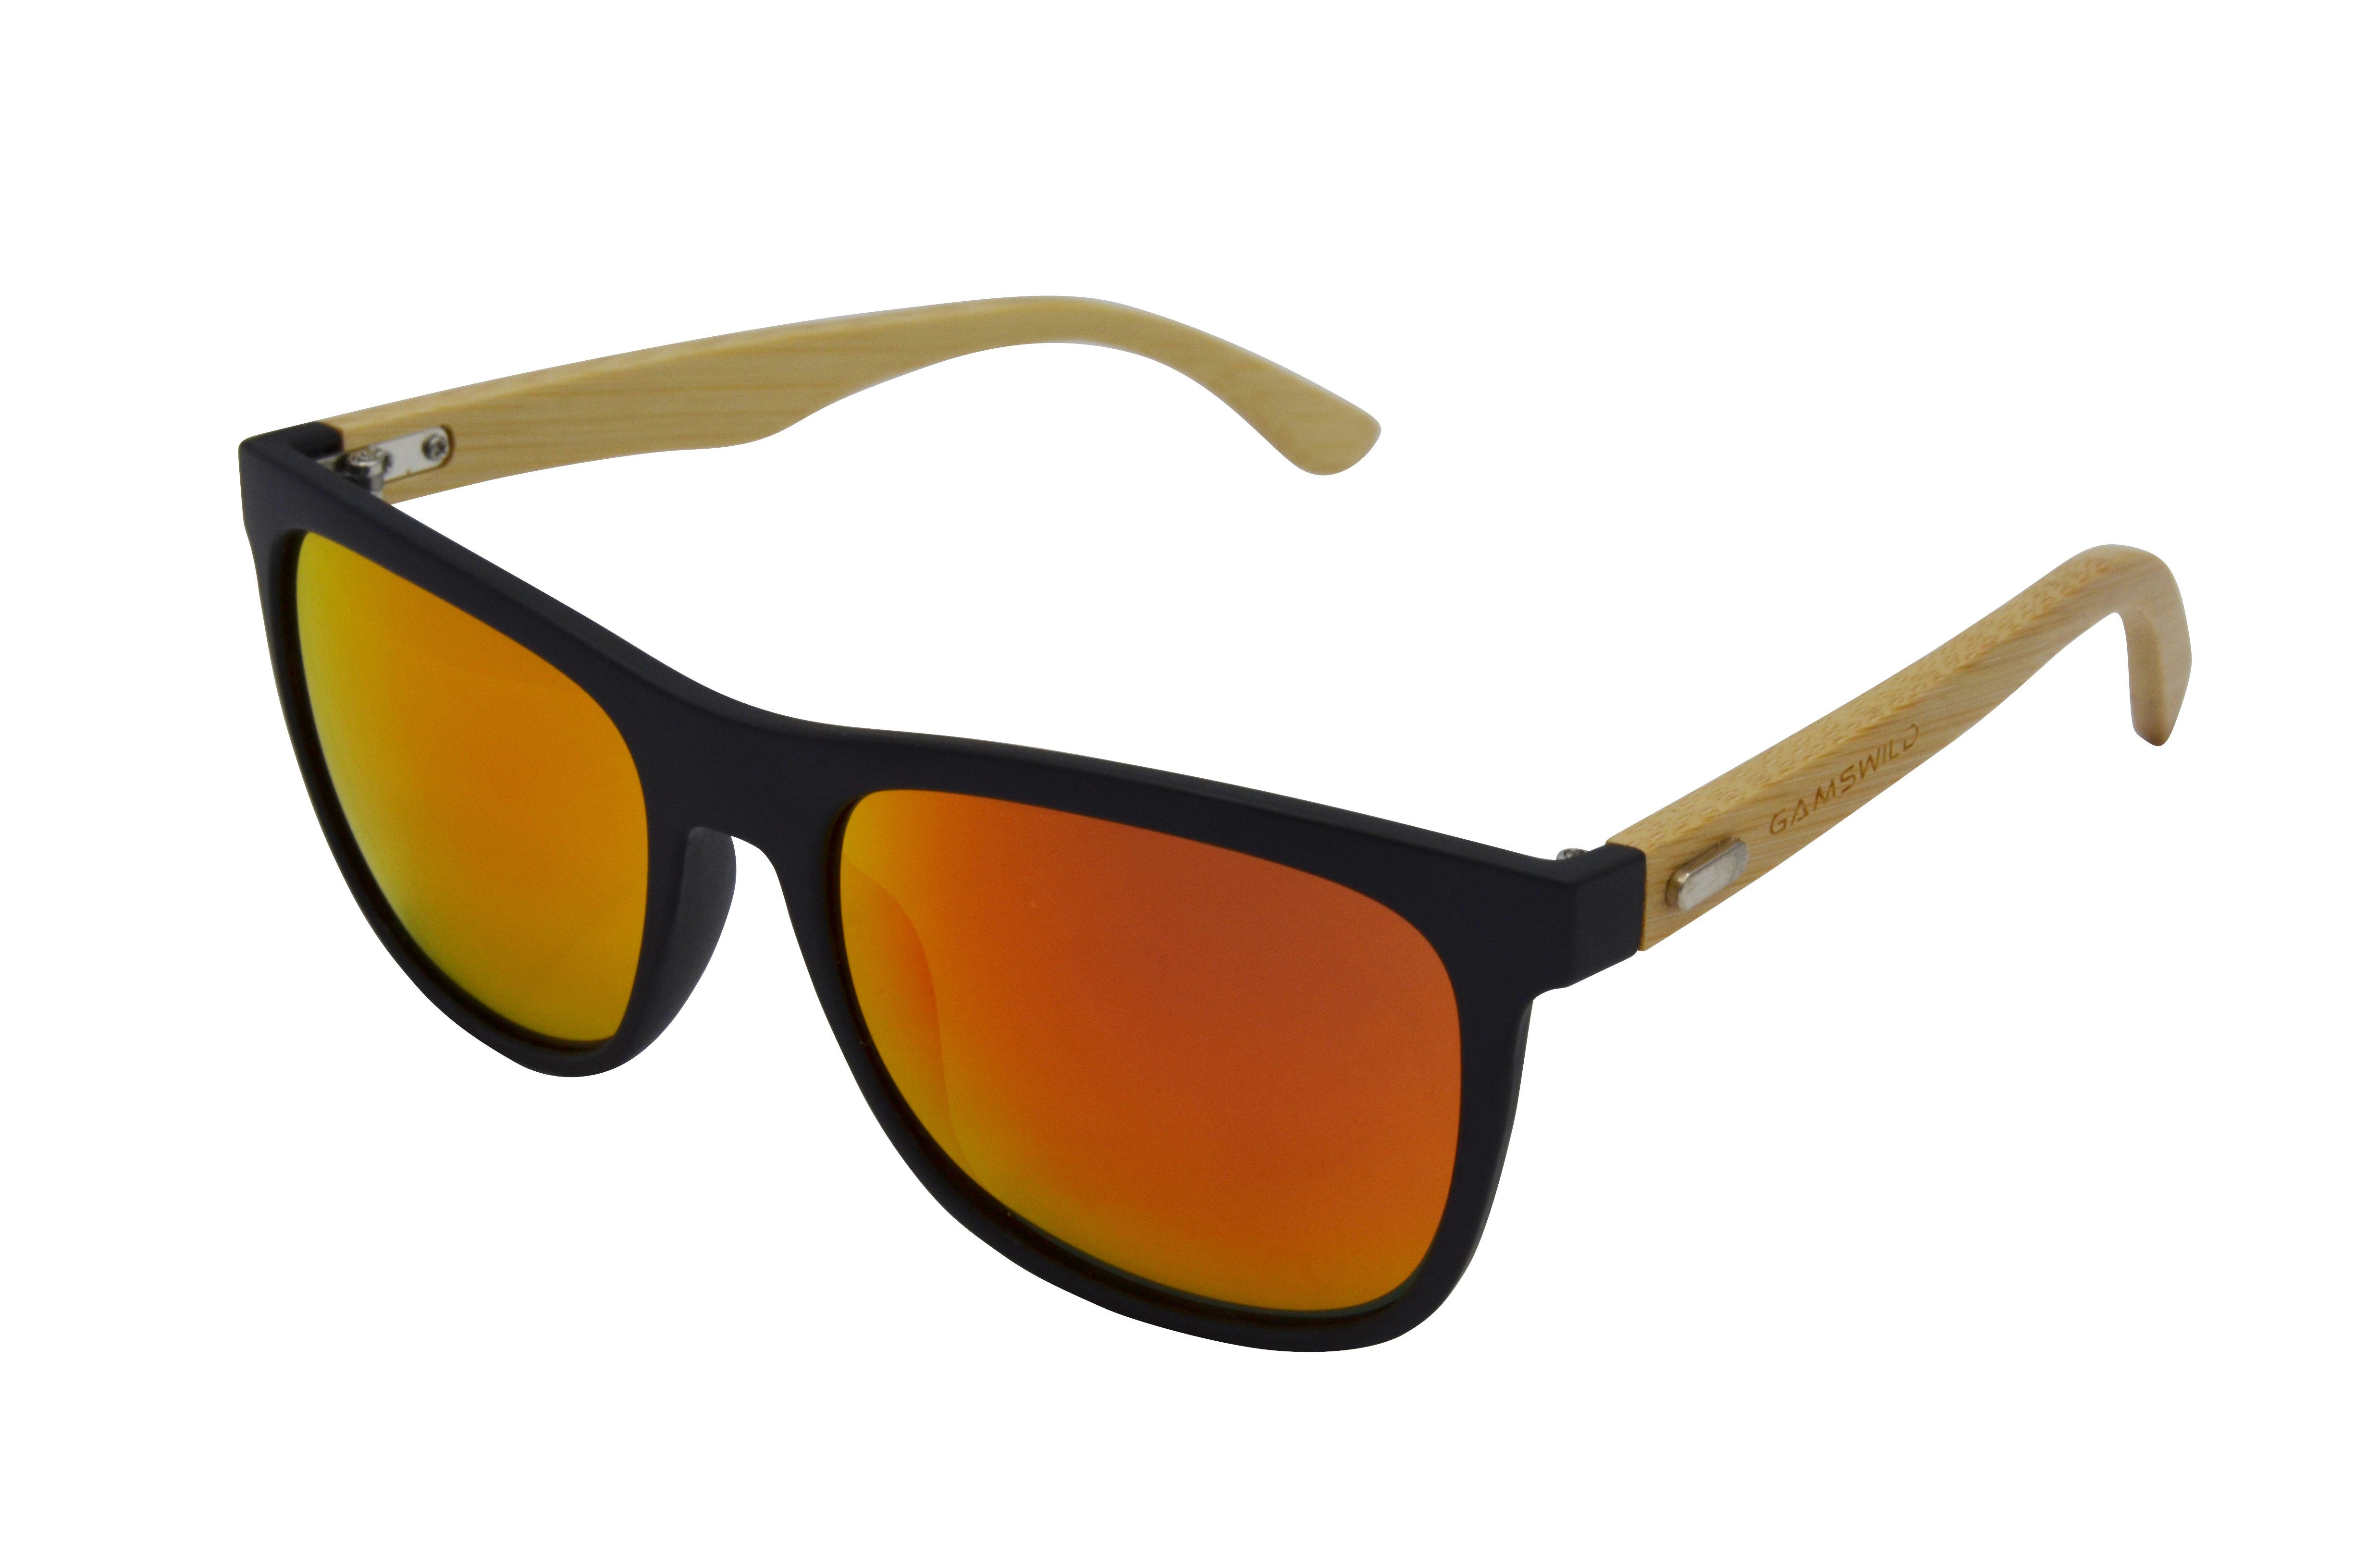 GAMSSTYLE - Gamswild Sonnenbrille Mode Unisex rot, Damen Brille Herren WM1028 grün Bambusholz, grün getönt orange, gelb,